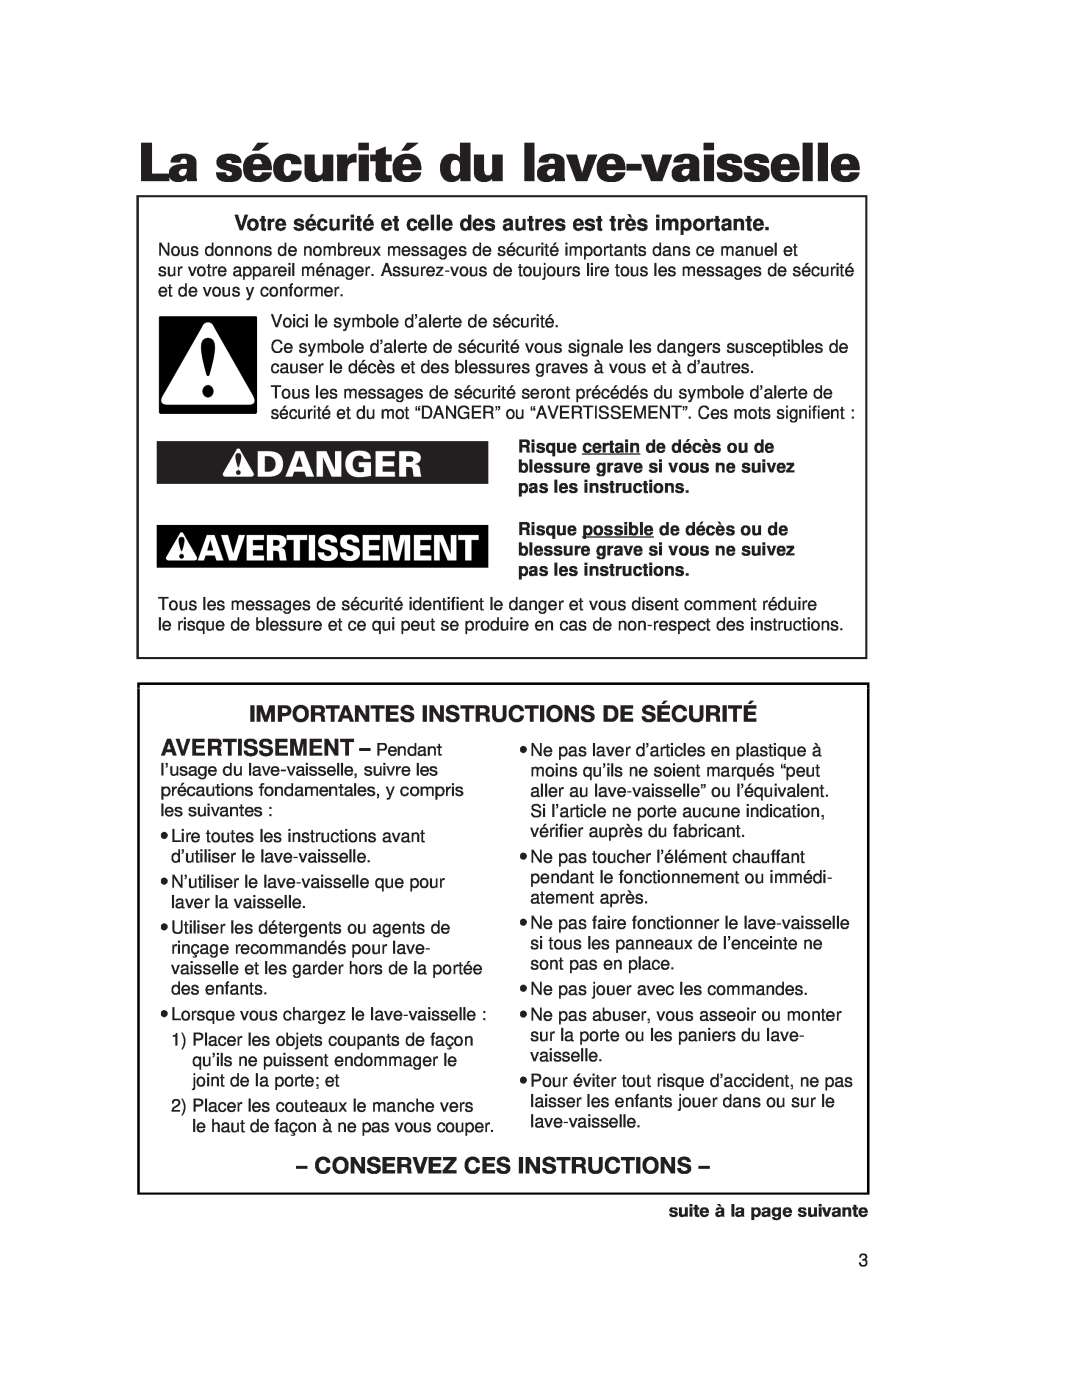 Whirlpool 980 warranty La sécurité du lave-vaisselle, Importantes Instructions De Sécurité, AVERTISSEMENT - Pendant 